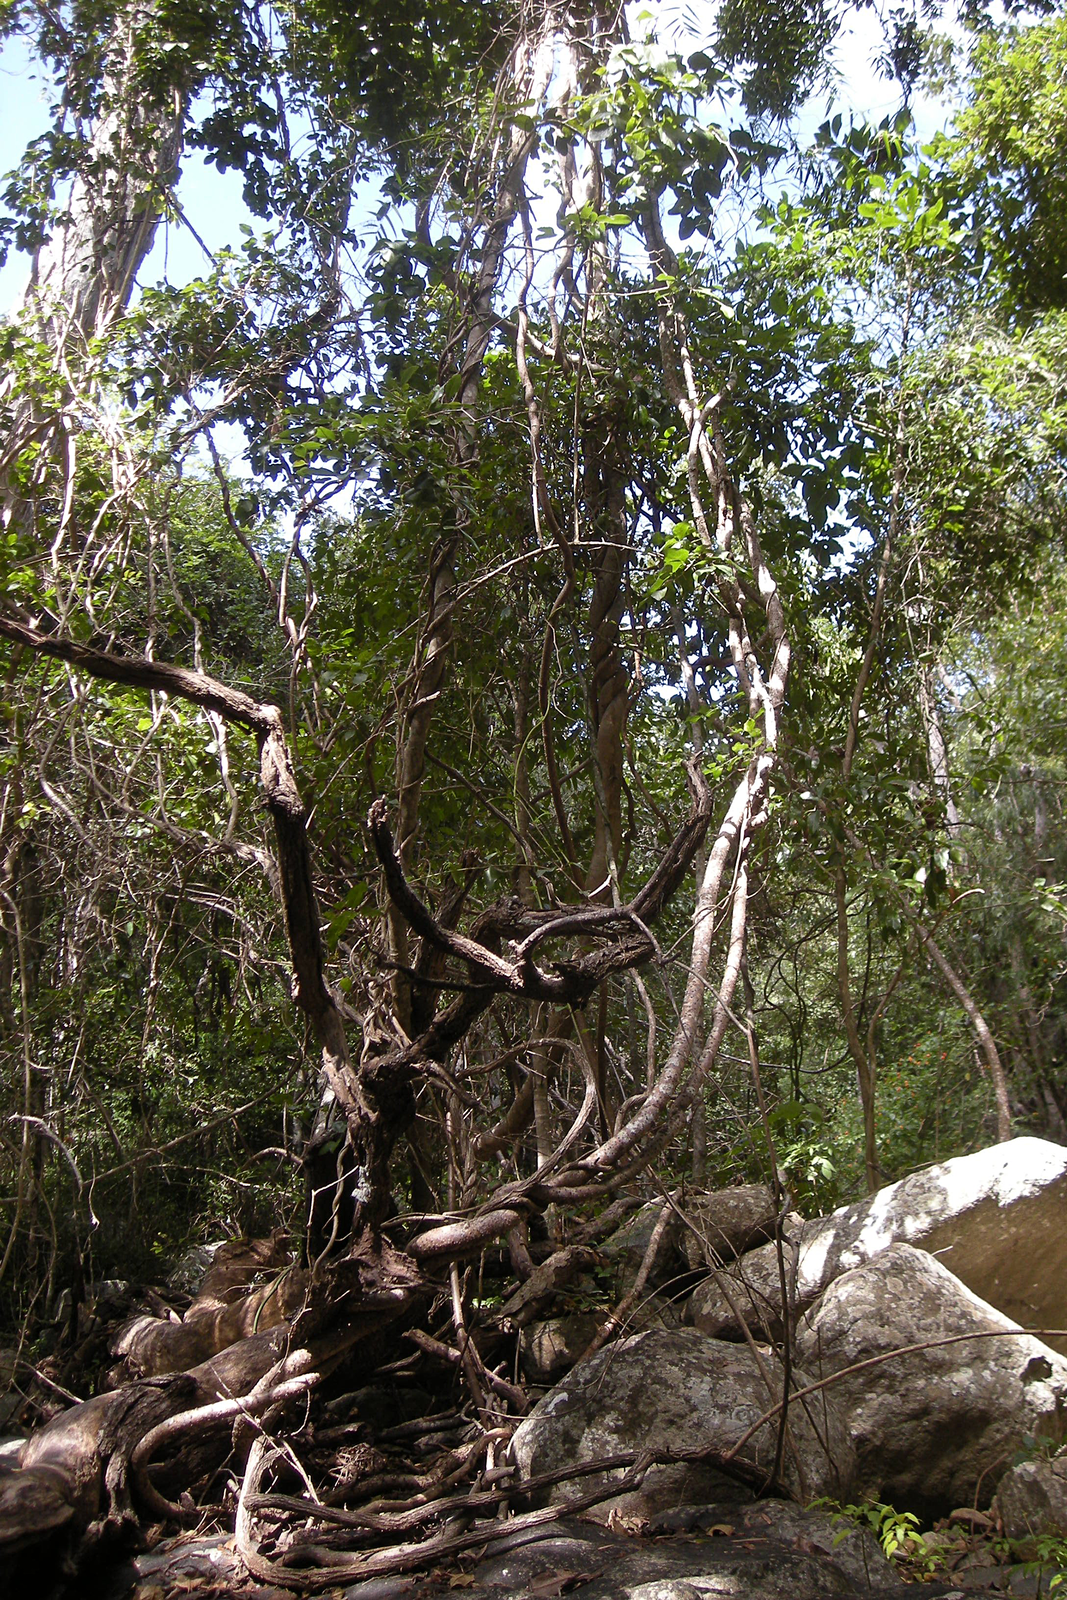 Fotografia przedstawia wnętrze tropikalnego lasu. Na pierwszym planie mocno powyginane, jasno brązowe pędy lian. Liany owijają się wokół pni drzew. Podłoże to skały i kamienie.